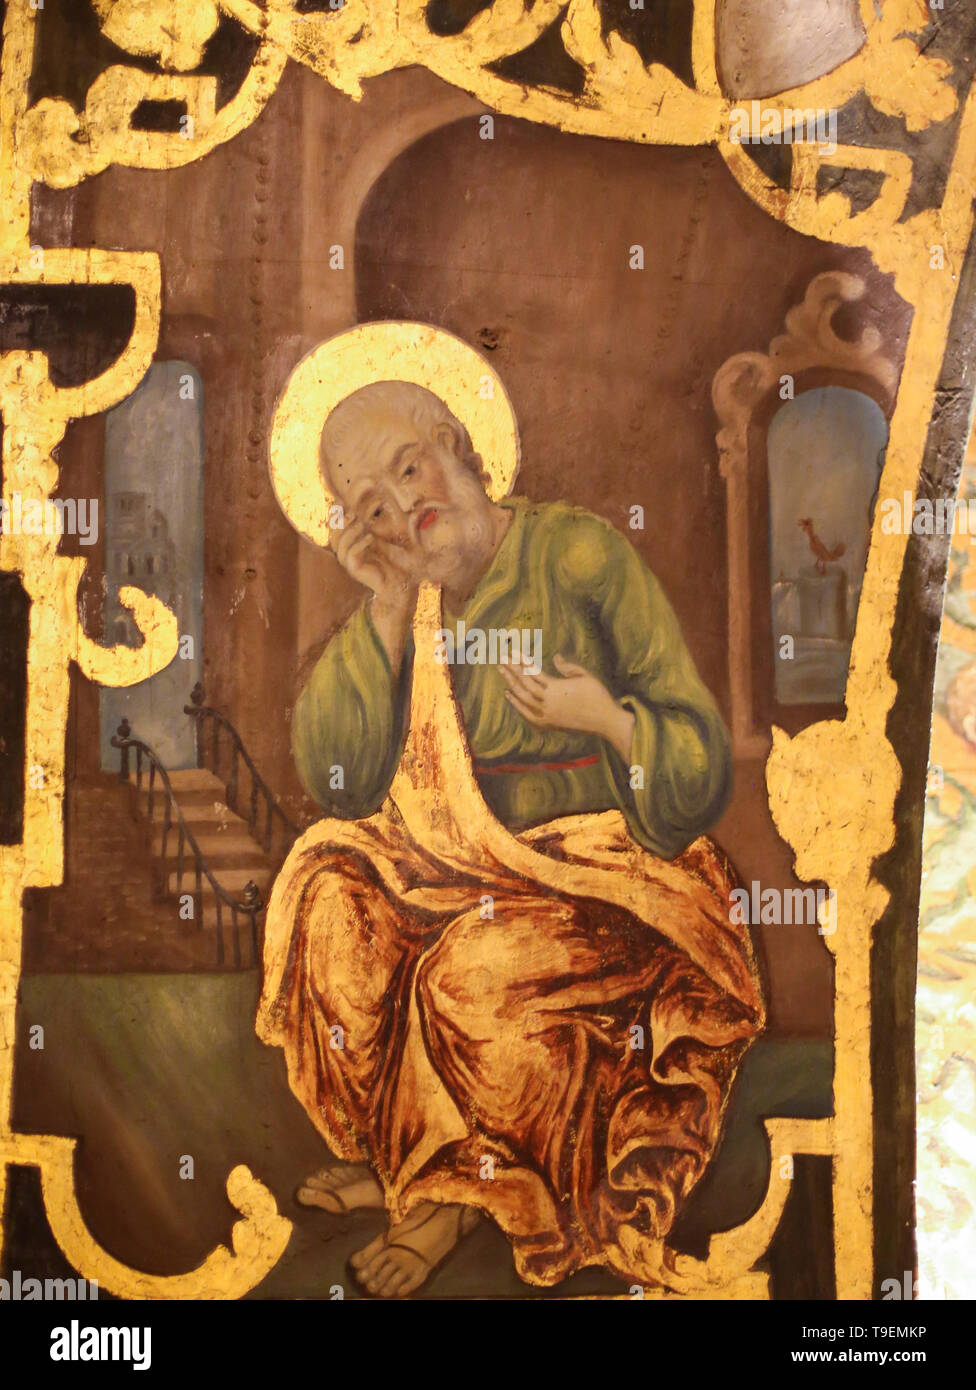 Fresque grecque orthodoxe dans l'église du Saint-Sépulcre à Jérusalem, illustrant le refus et le repentir de Saint Pierre, avec le coq qui chantent en t Banque D'Images